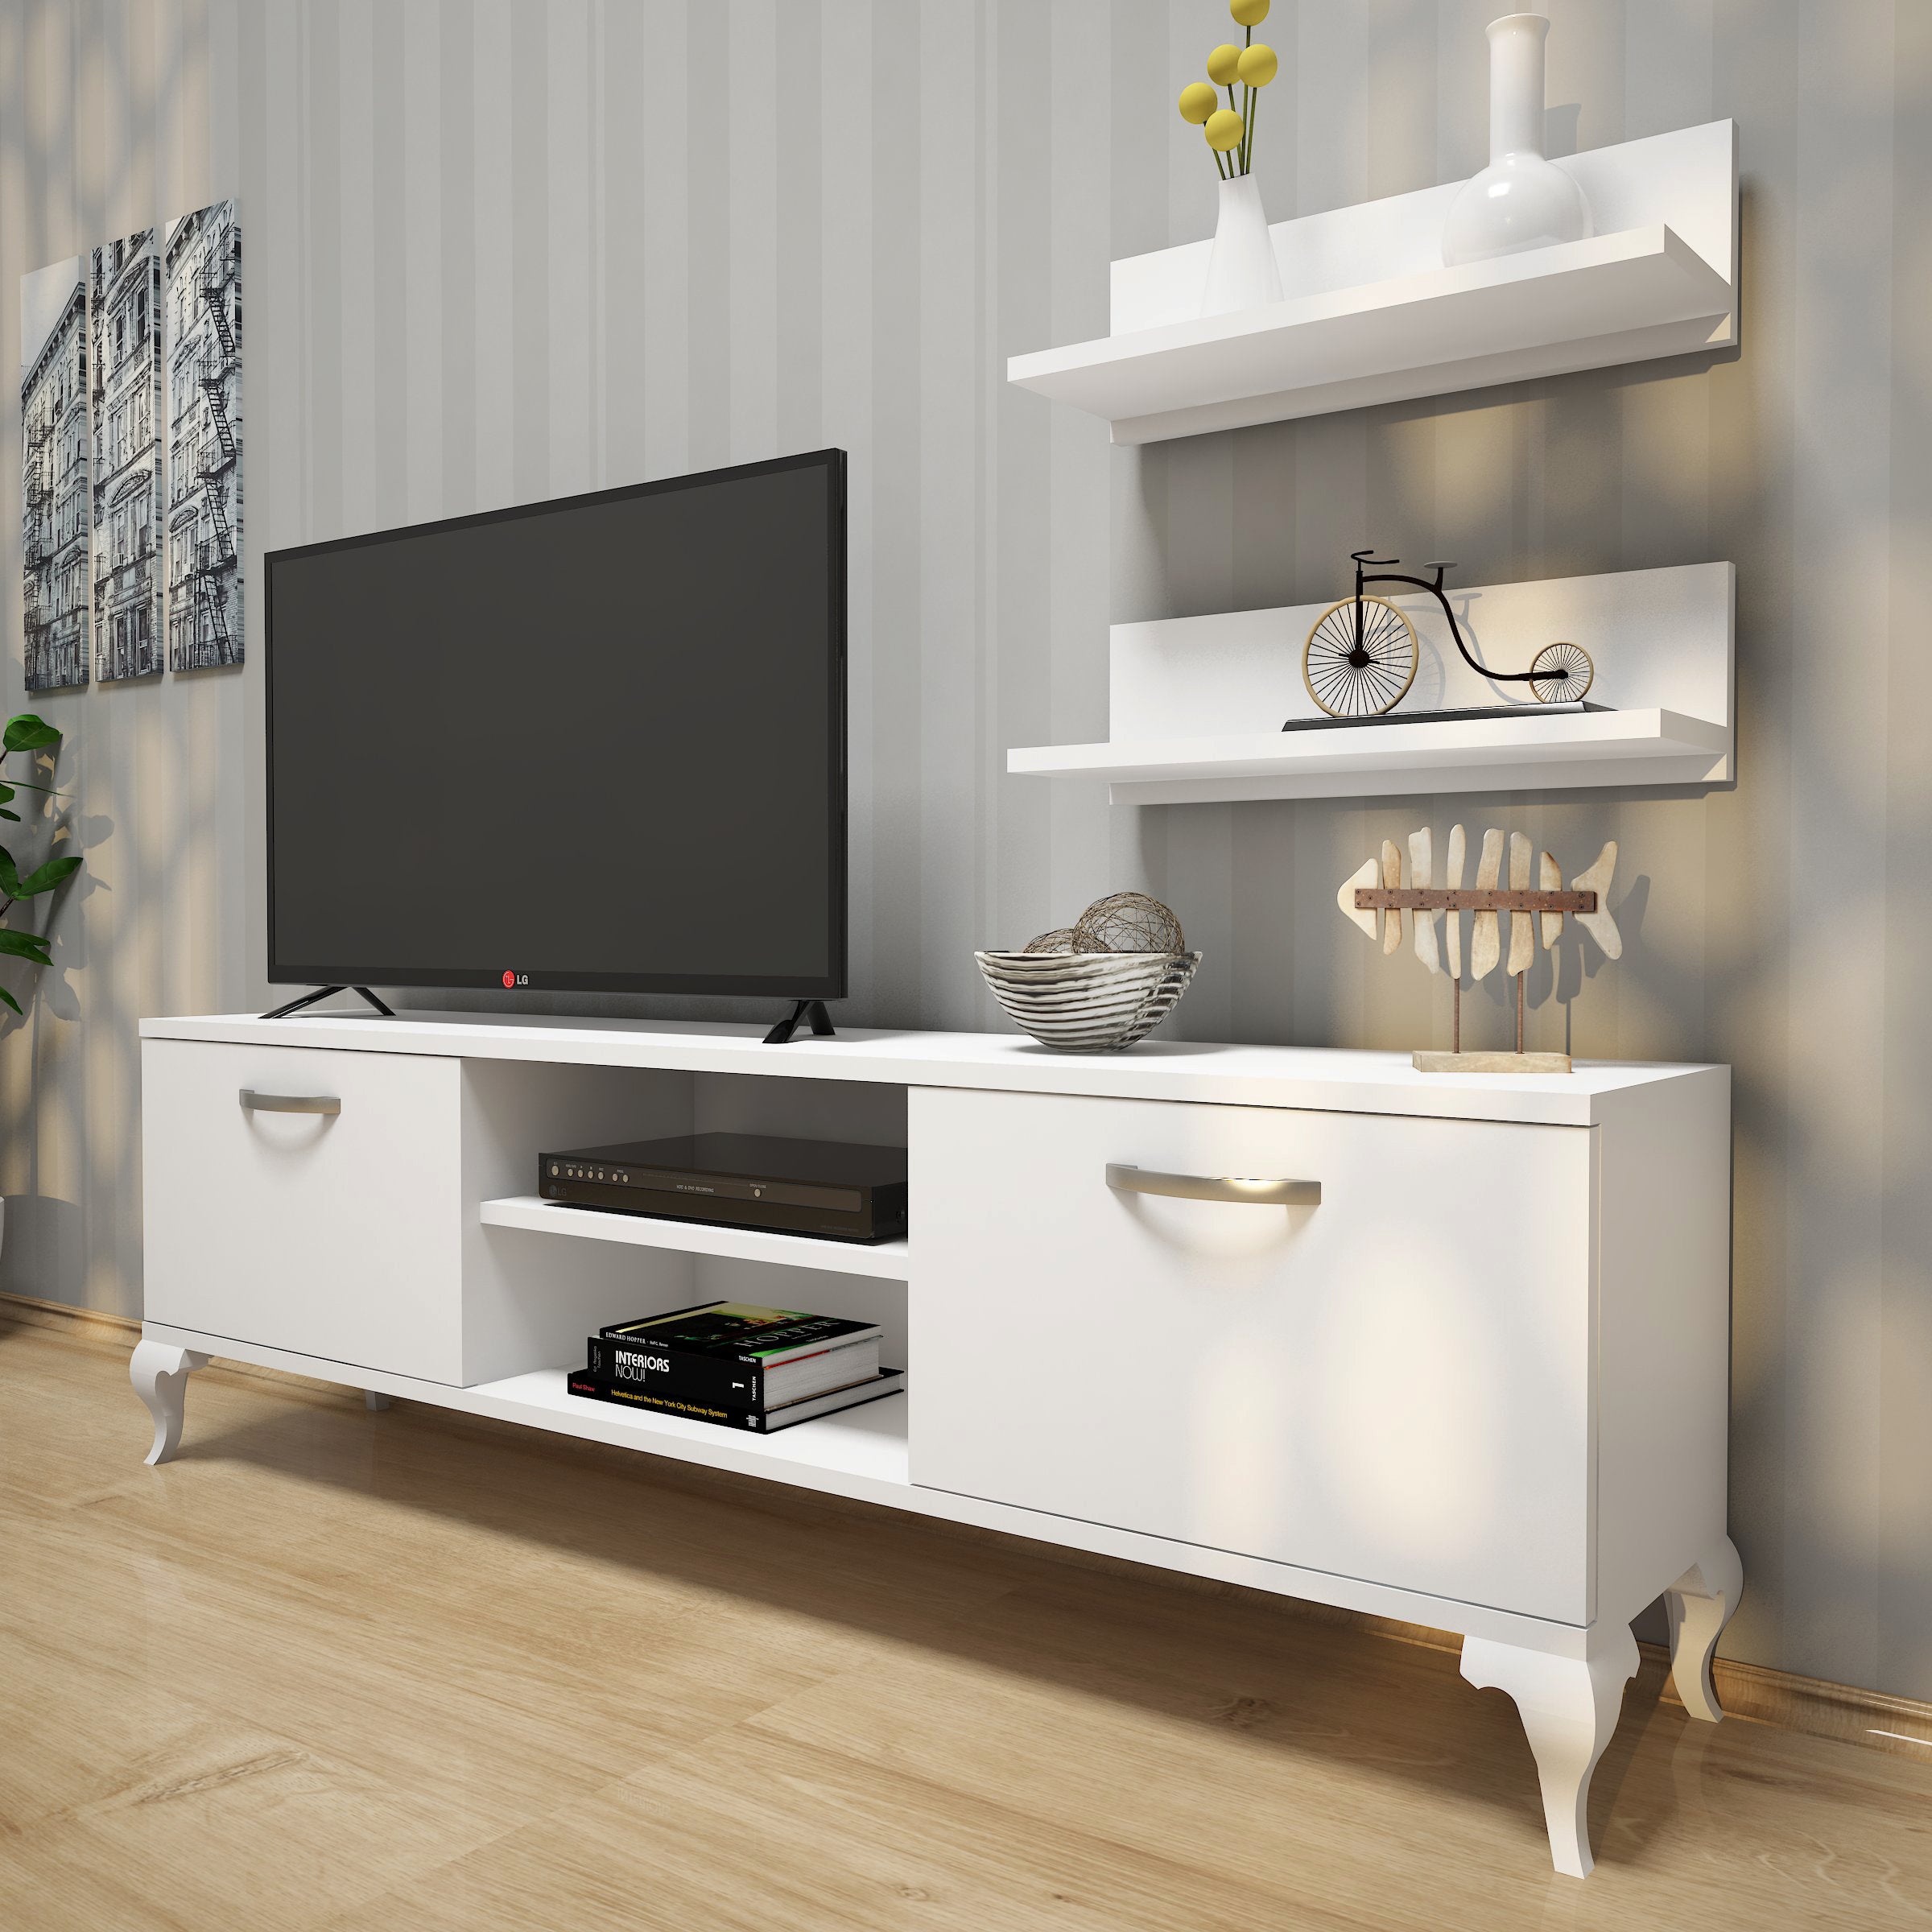 Rani A4 Duvar Raflı Tv Sehpası - Kitaplıklı Tv Ünitesi Modern Ayaklı Tasarım Beyaz